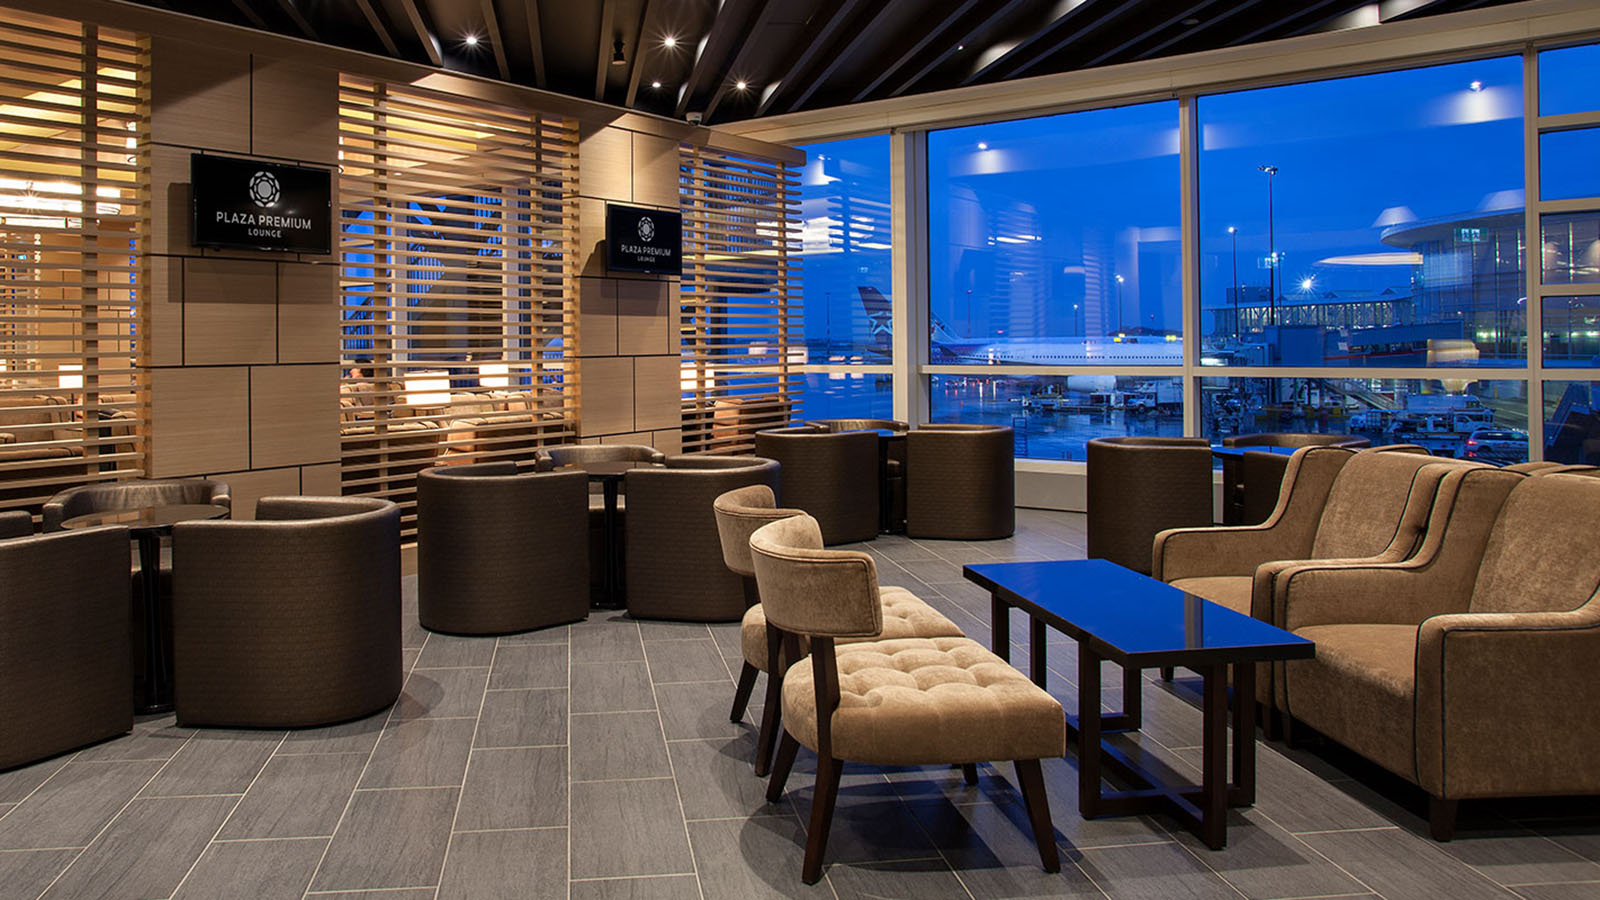 Plaza Premium Lounge, Vancouver